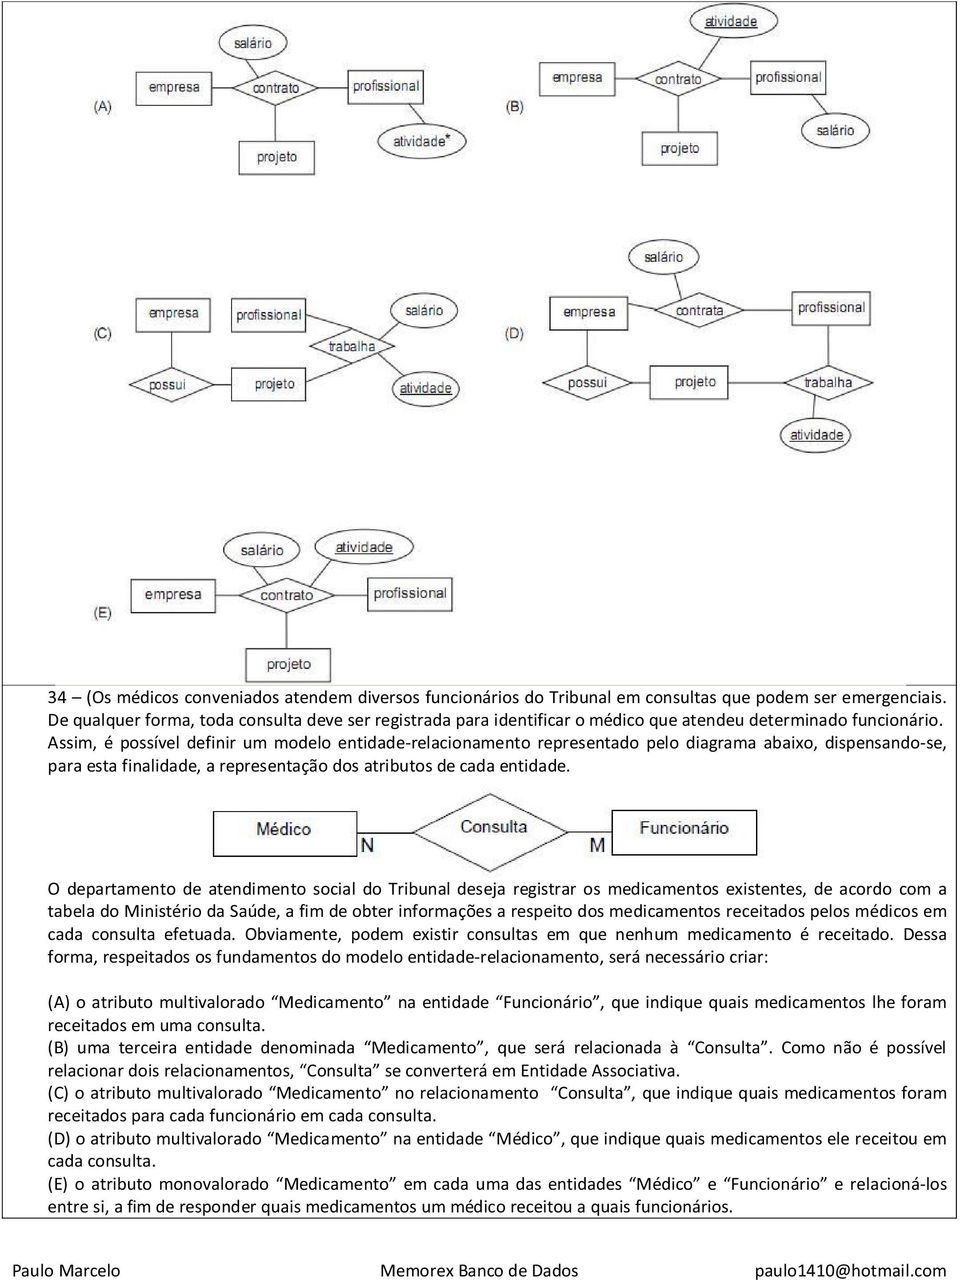 Assim, é possível definir um modelo entidade-relacionamento representado pelo diagrama abaixo, dispensando-se, para esta finalidade, a representação dos atributos de cada entidade.